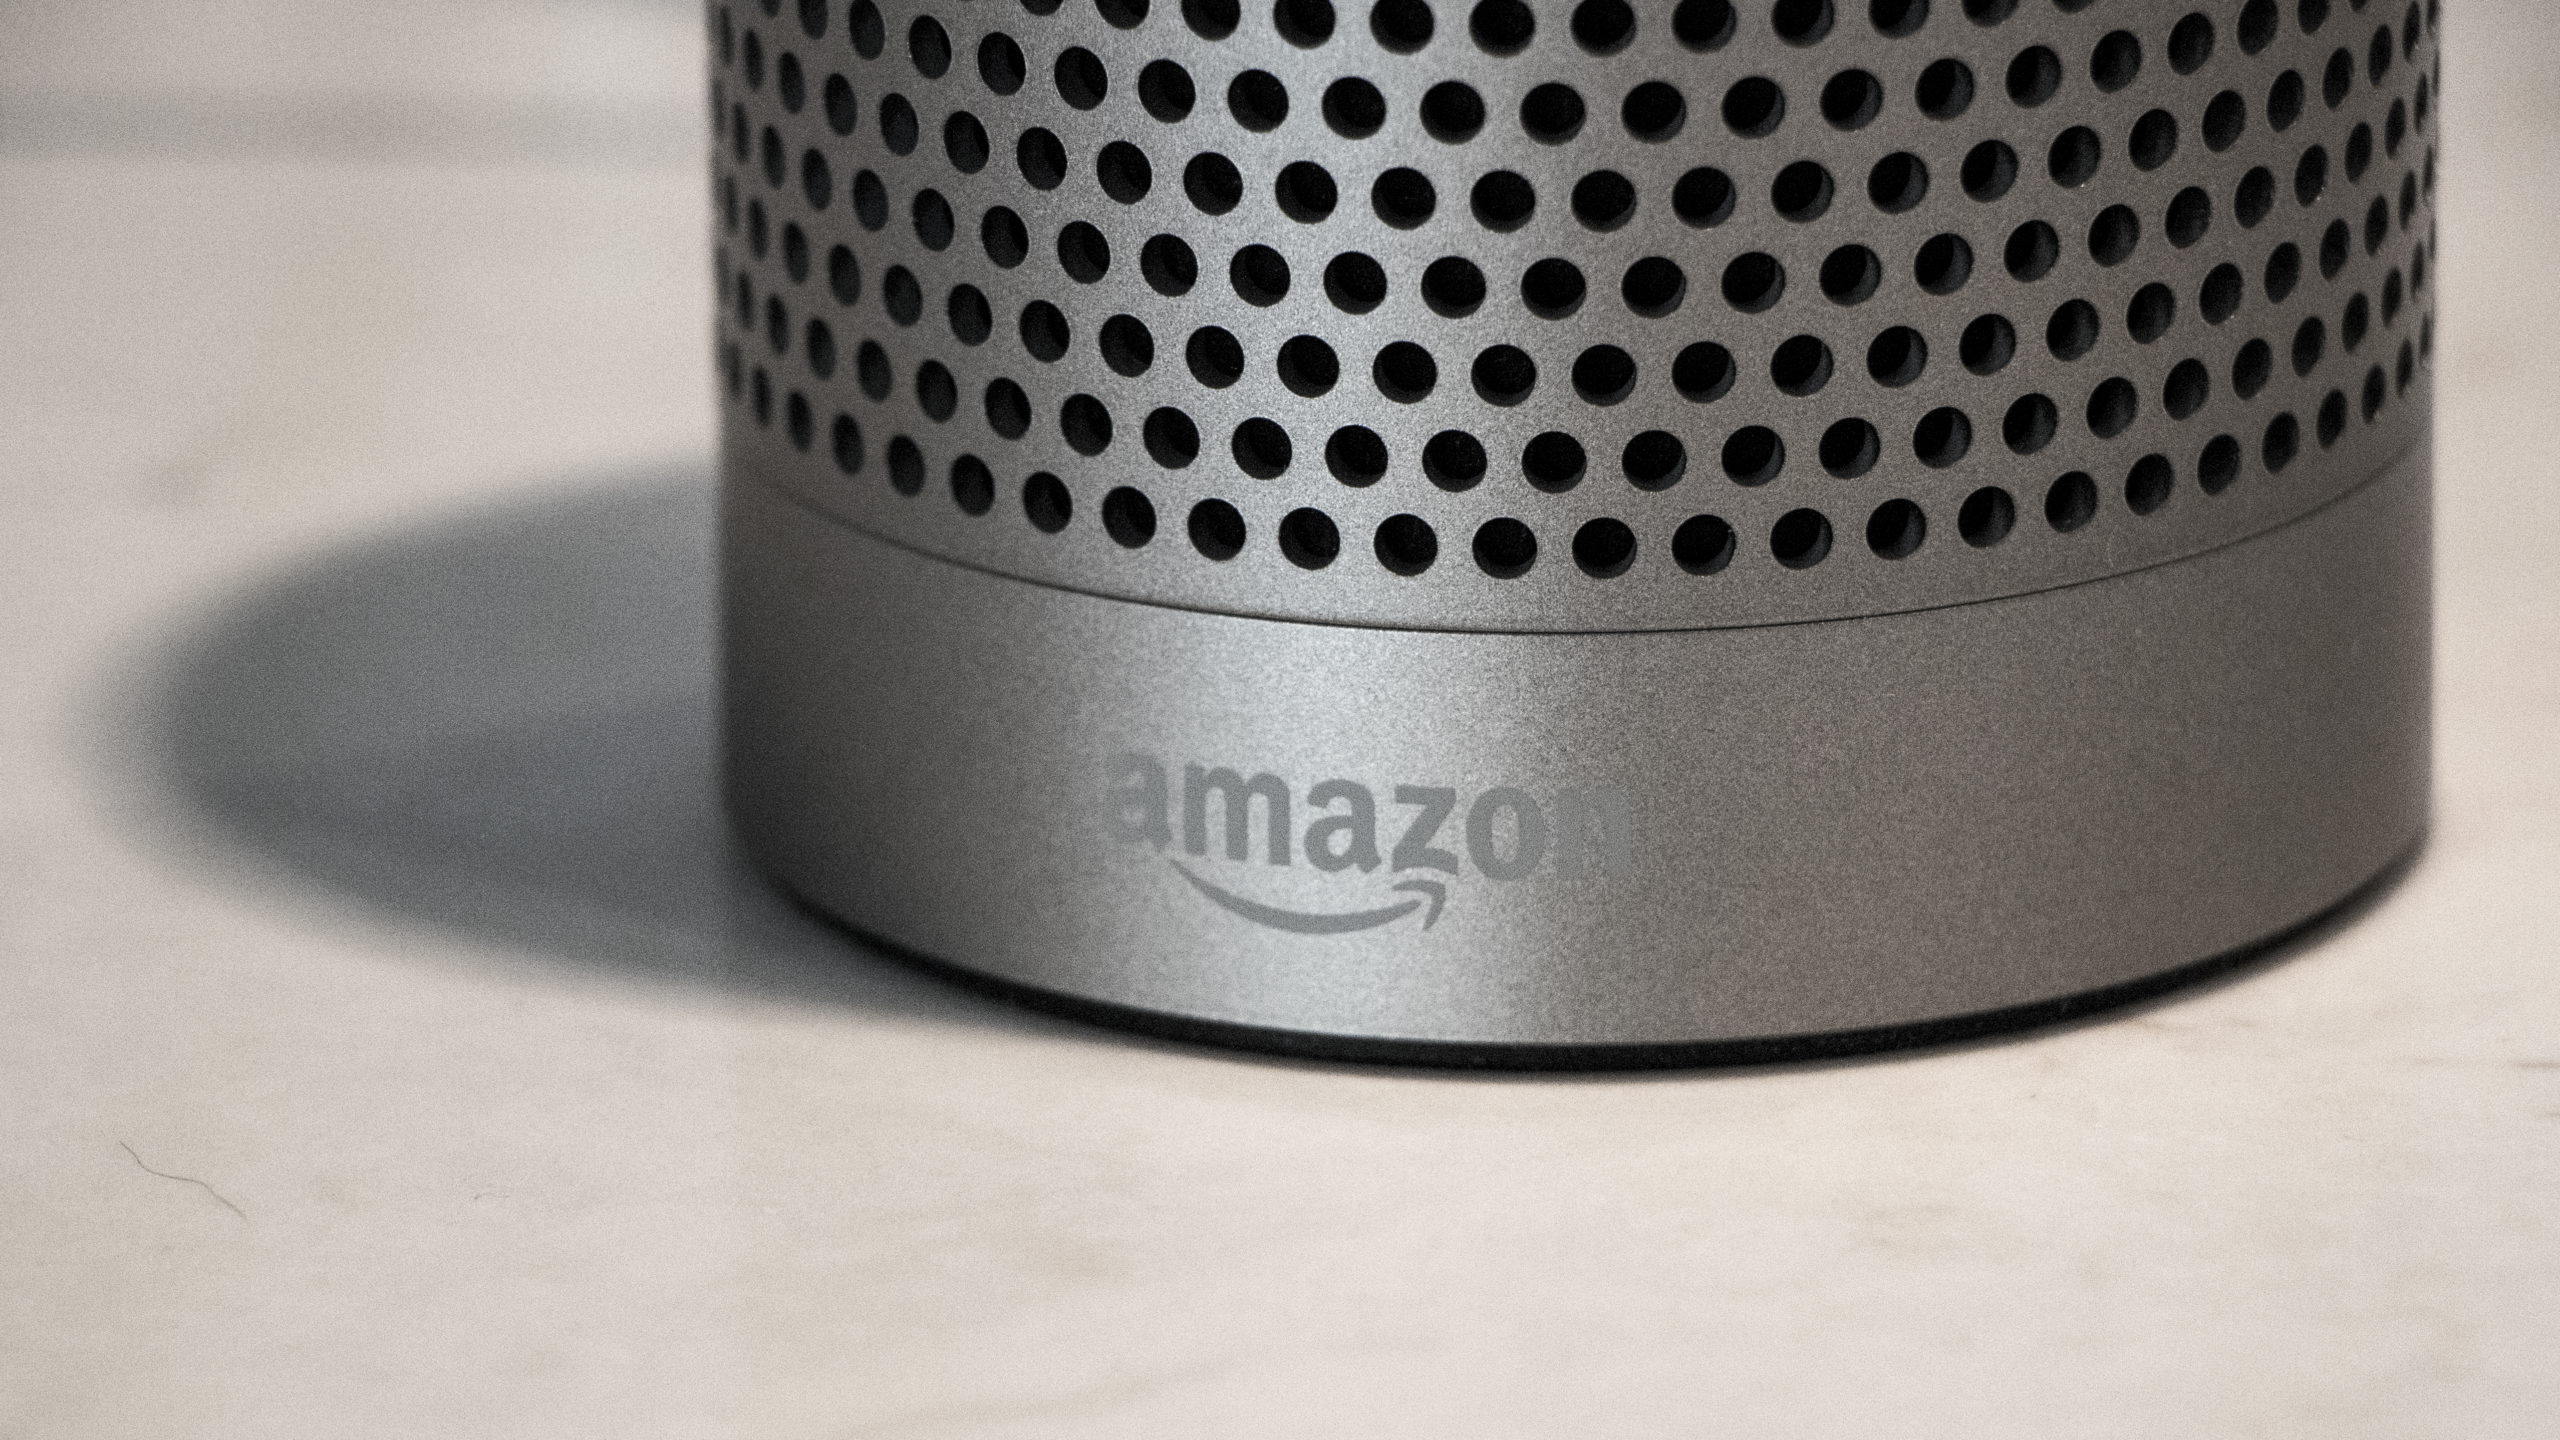 Amazon Echo Plus: The Gizmodo Review